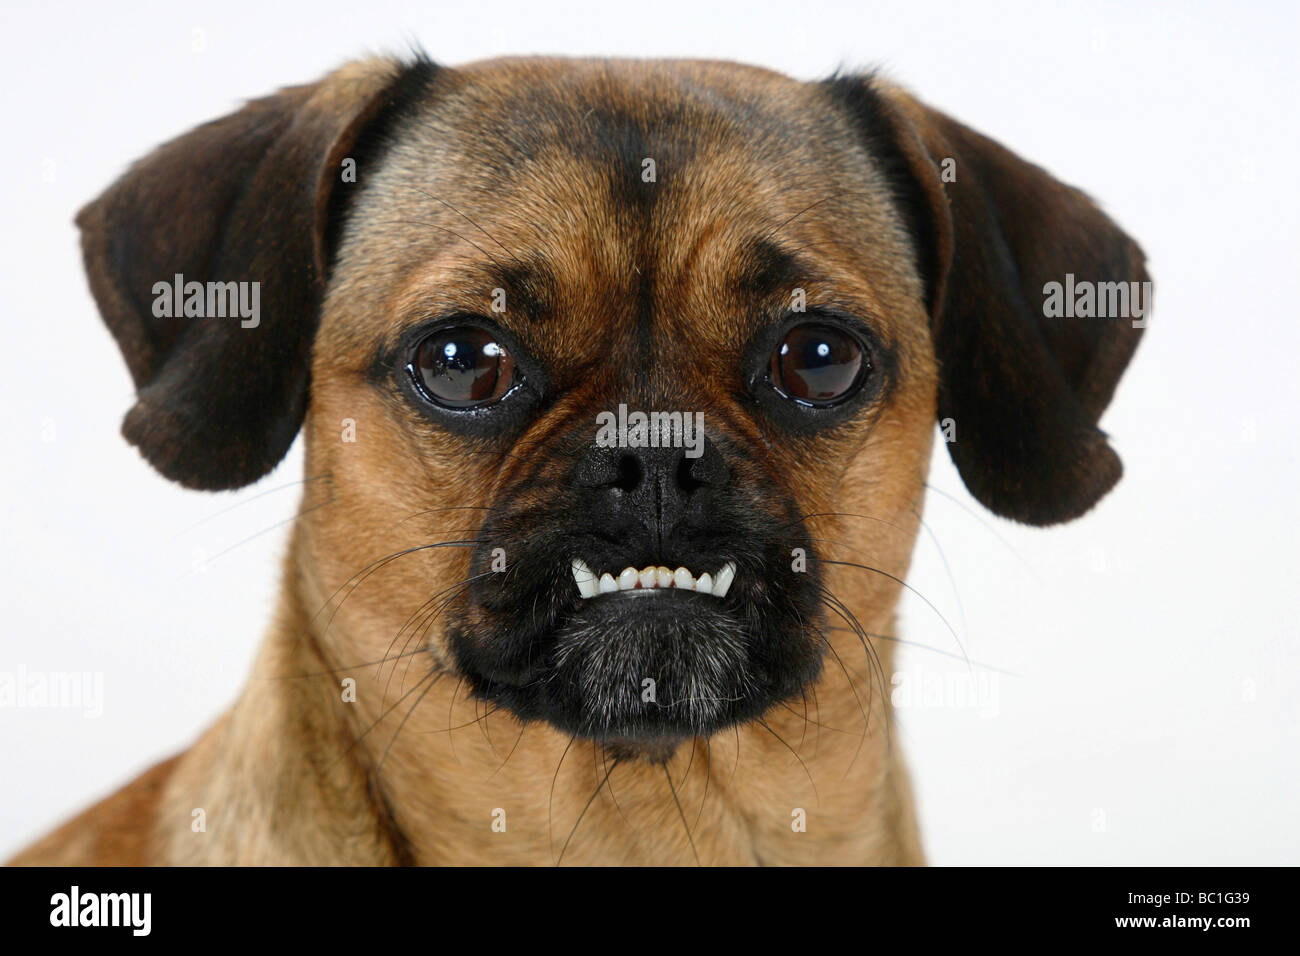 Gemischte Rasse Hund unterschritten reinrassiger Mops Dackel beißen Hündin  Stockfotografie - Alamy